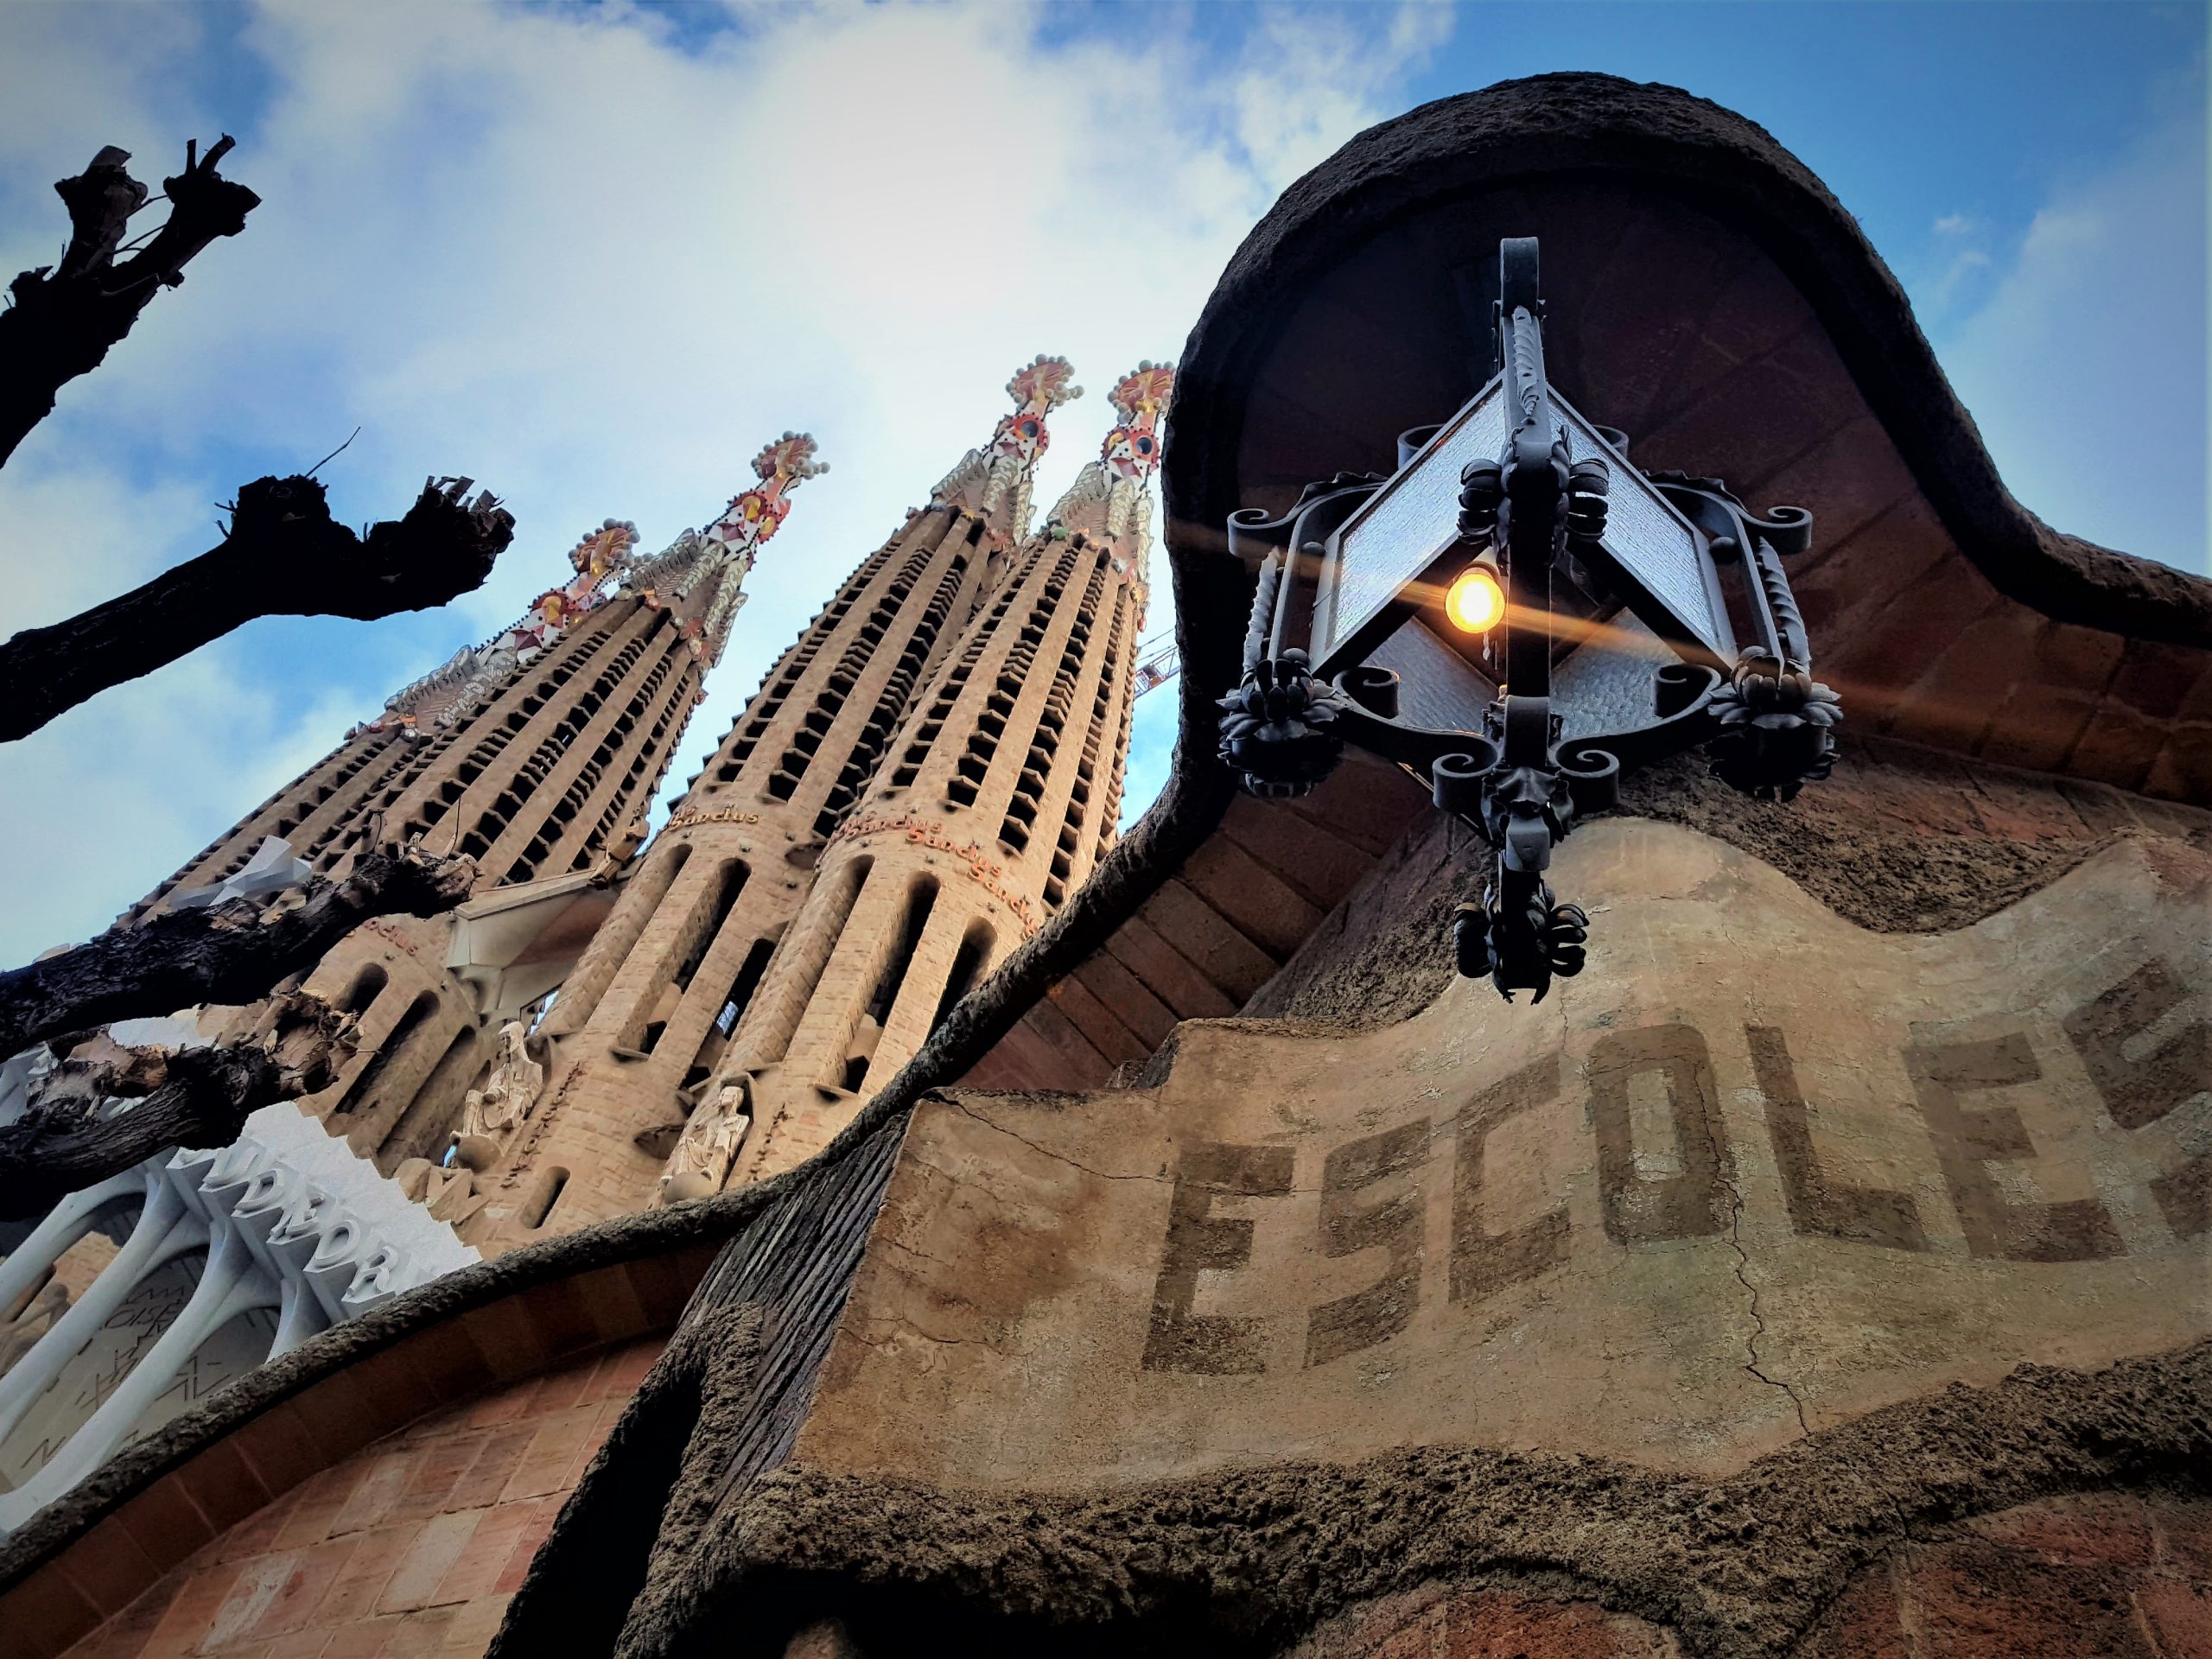 Le torri della Sagrada familia e l'edificio scolastico "escoles" dall'esterno, disegnato da Antoni Gaudí